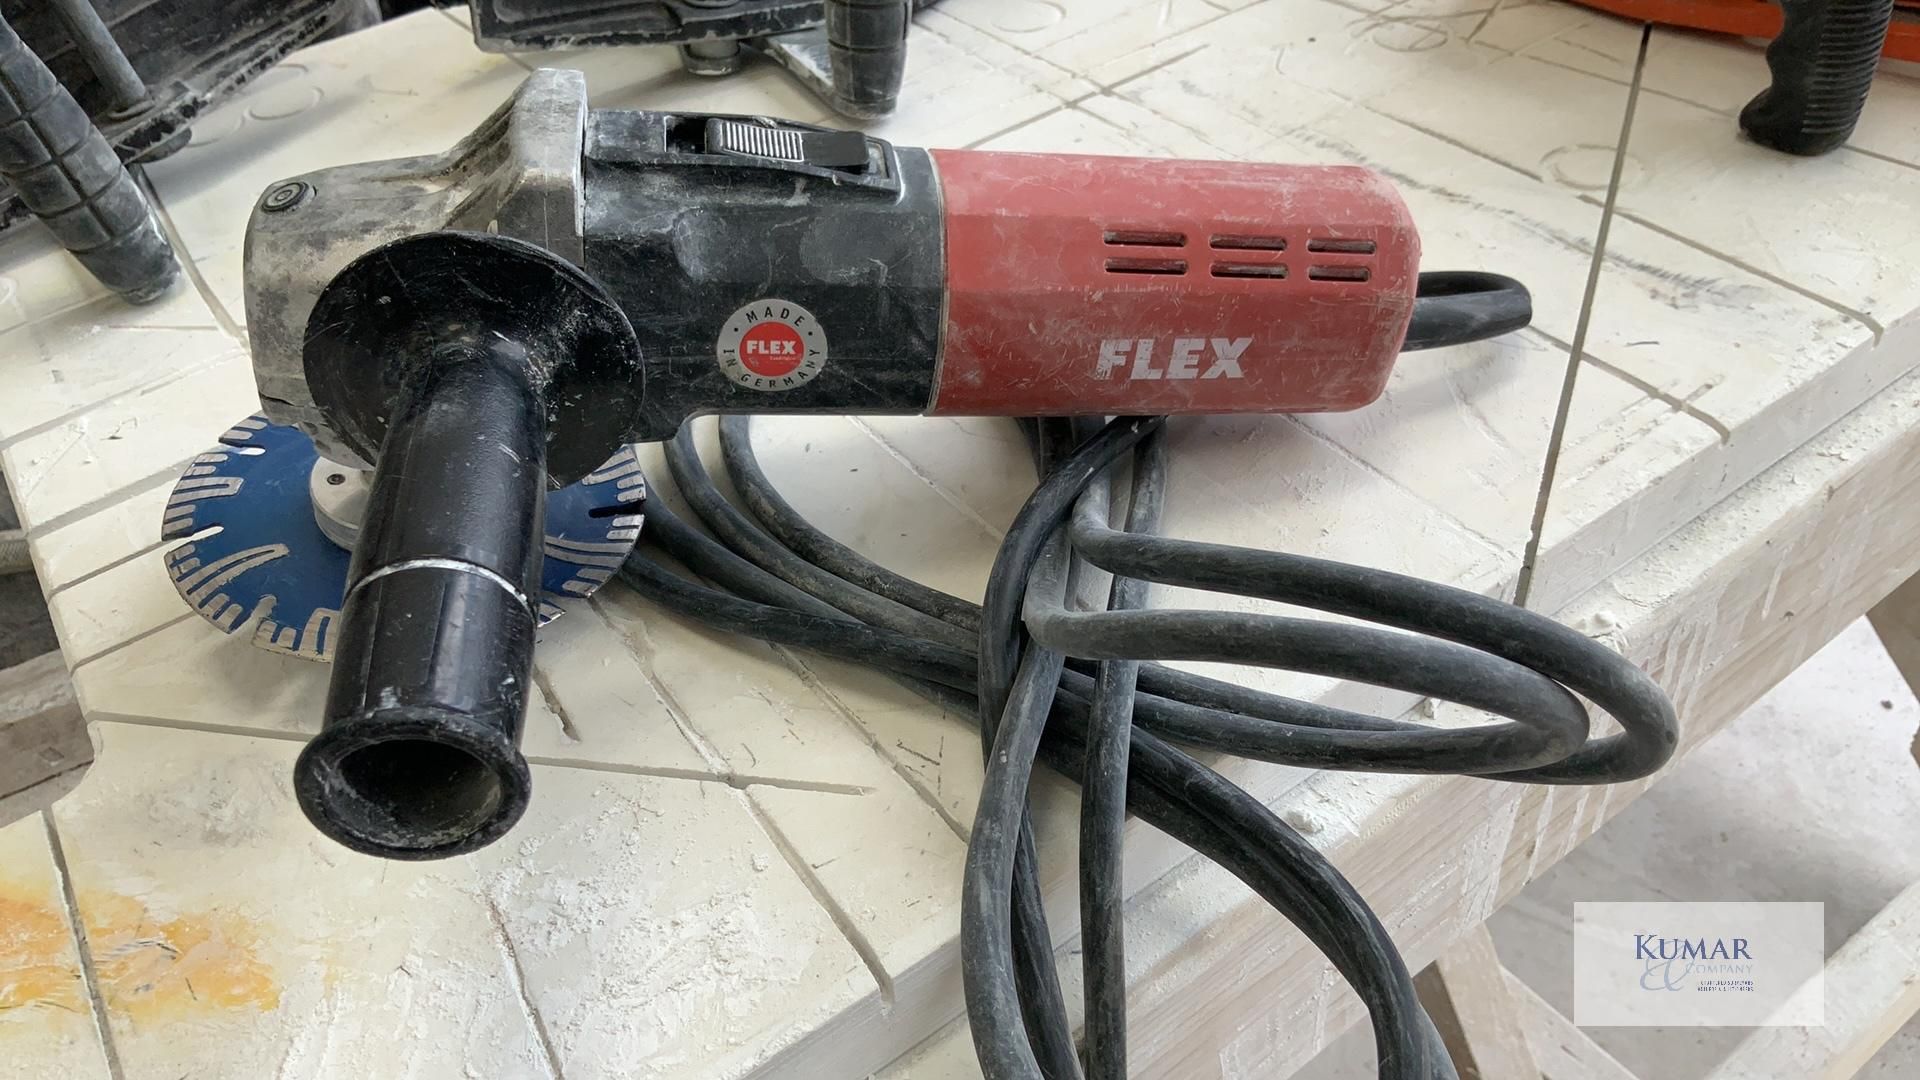 Flex L 1506 VR 125mm Angle Grinder/Polisher, Serial no.82731 (12/2019) - Image 5 of 5